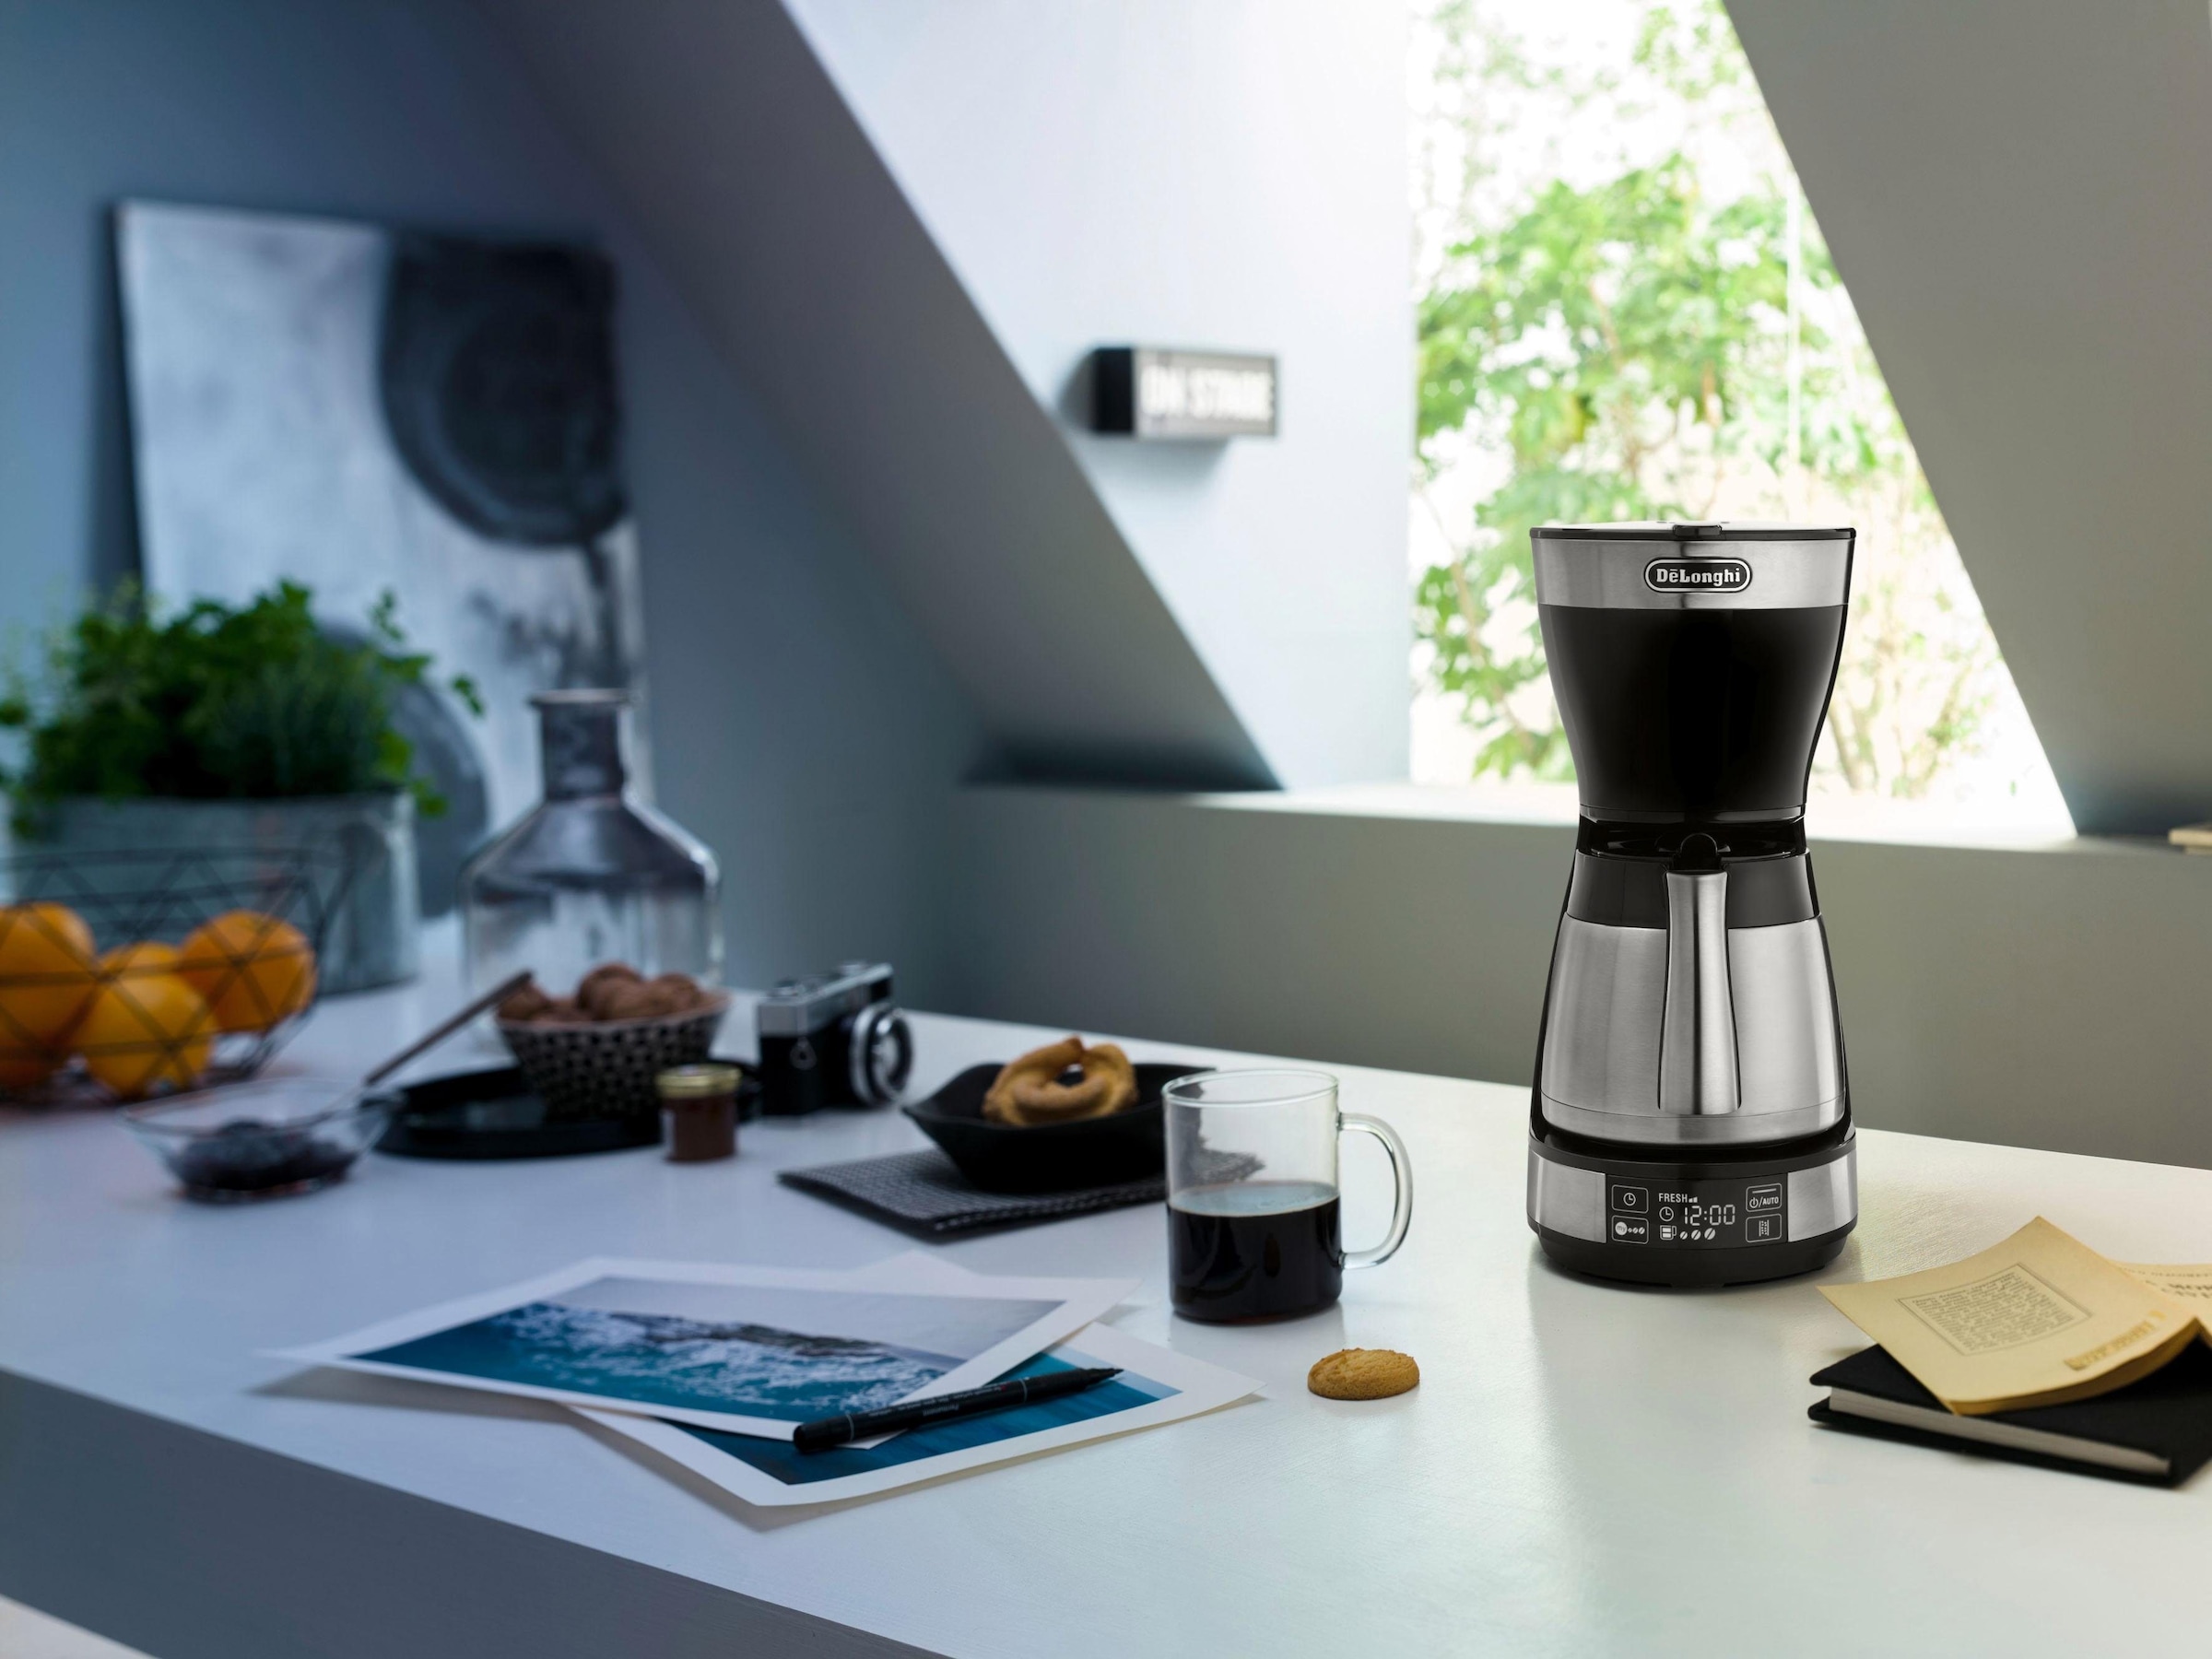 De\'Longhi Filterkaffeemaschine »ICM 16731«, 1,25 l Kaffeekanne, Papierfilter  jetzt online bei OTTO